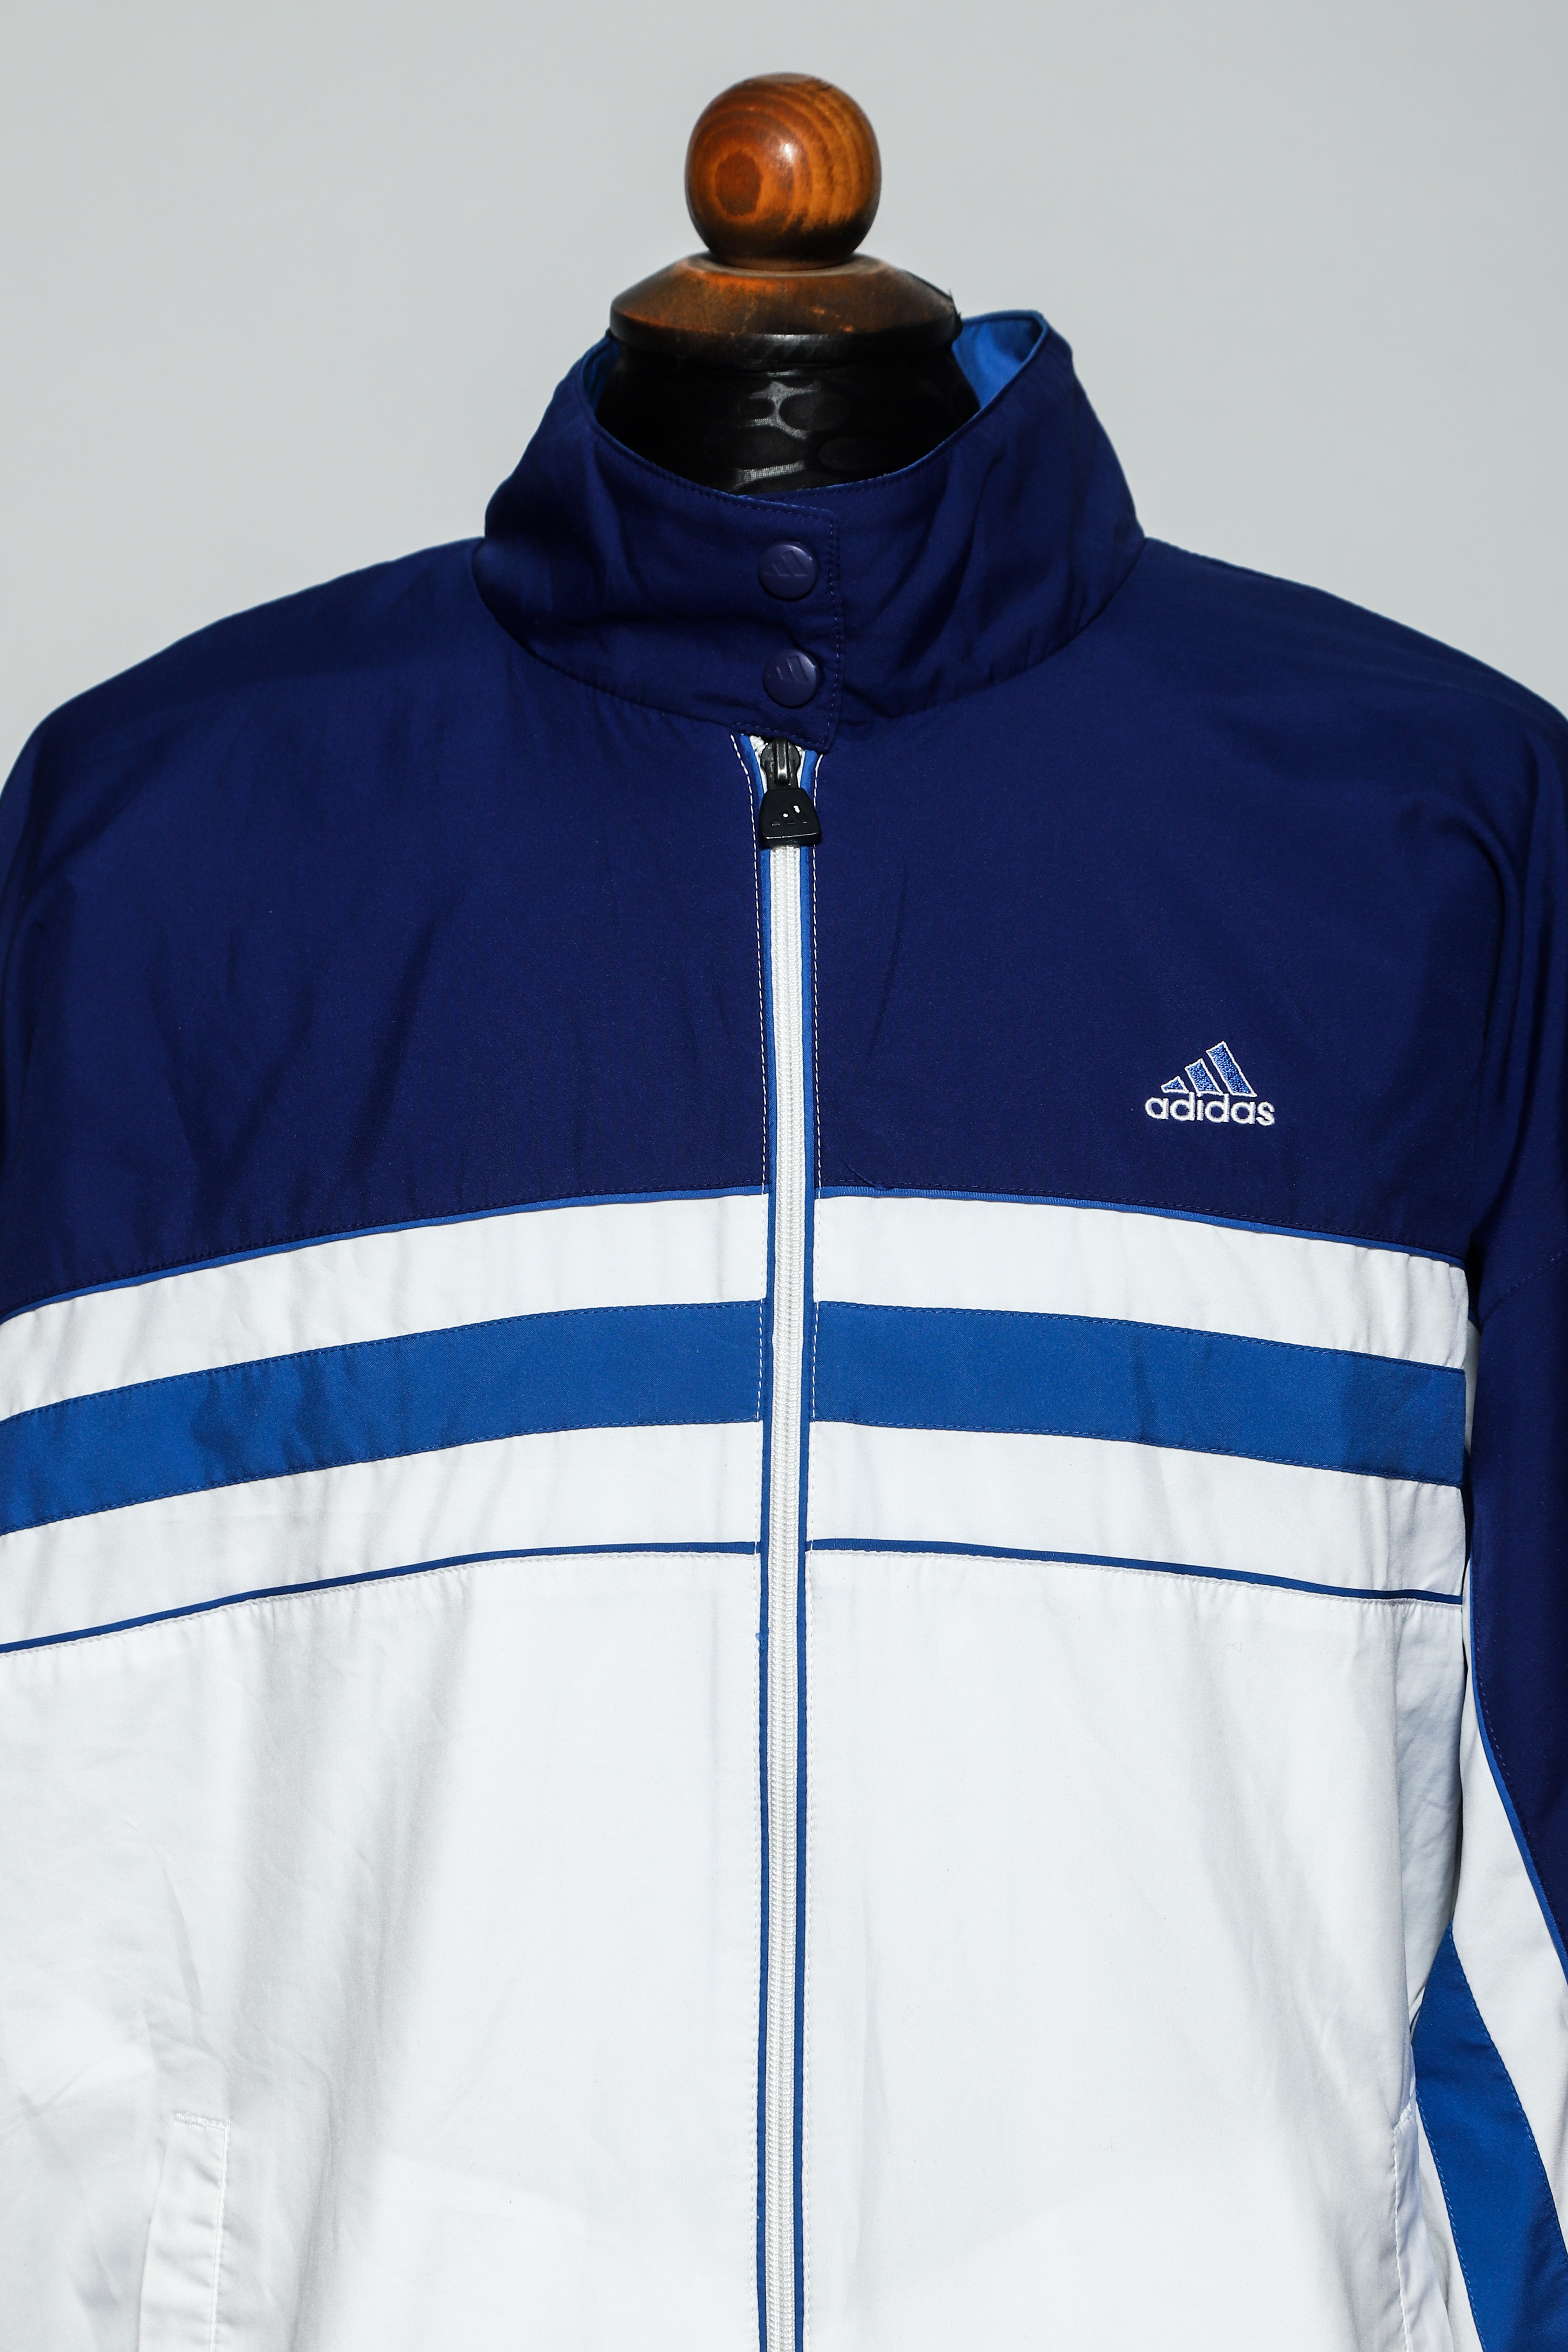 White and Blue Adidas Track Jacket